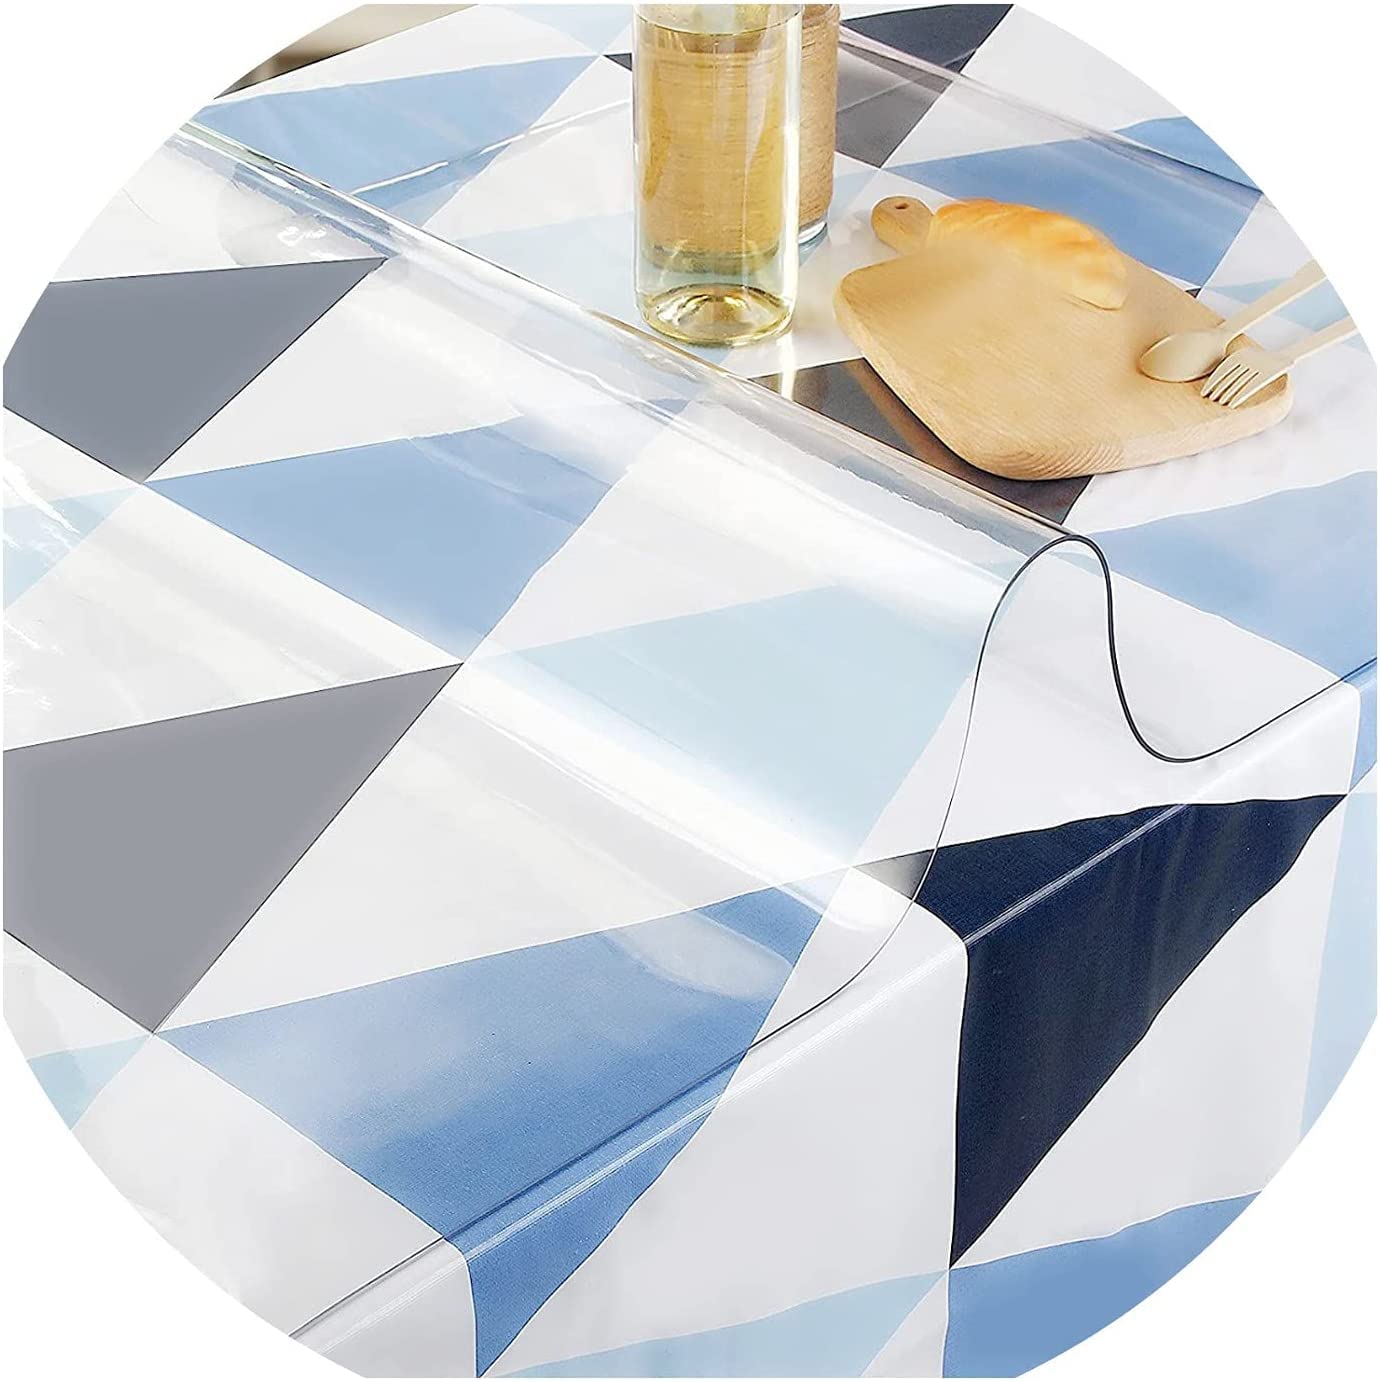 Tischschutz Folie Transparente PVC Folie Schutzfolie Glasklar Tischdecke Tischfolie,Wasserdicht VerschleißFest HitzebestäNdig,Geeignet FüR KüChe, Garten Und BüRo(Color:2mm,Size: 55x85cm)